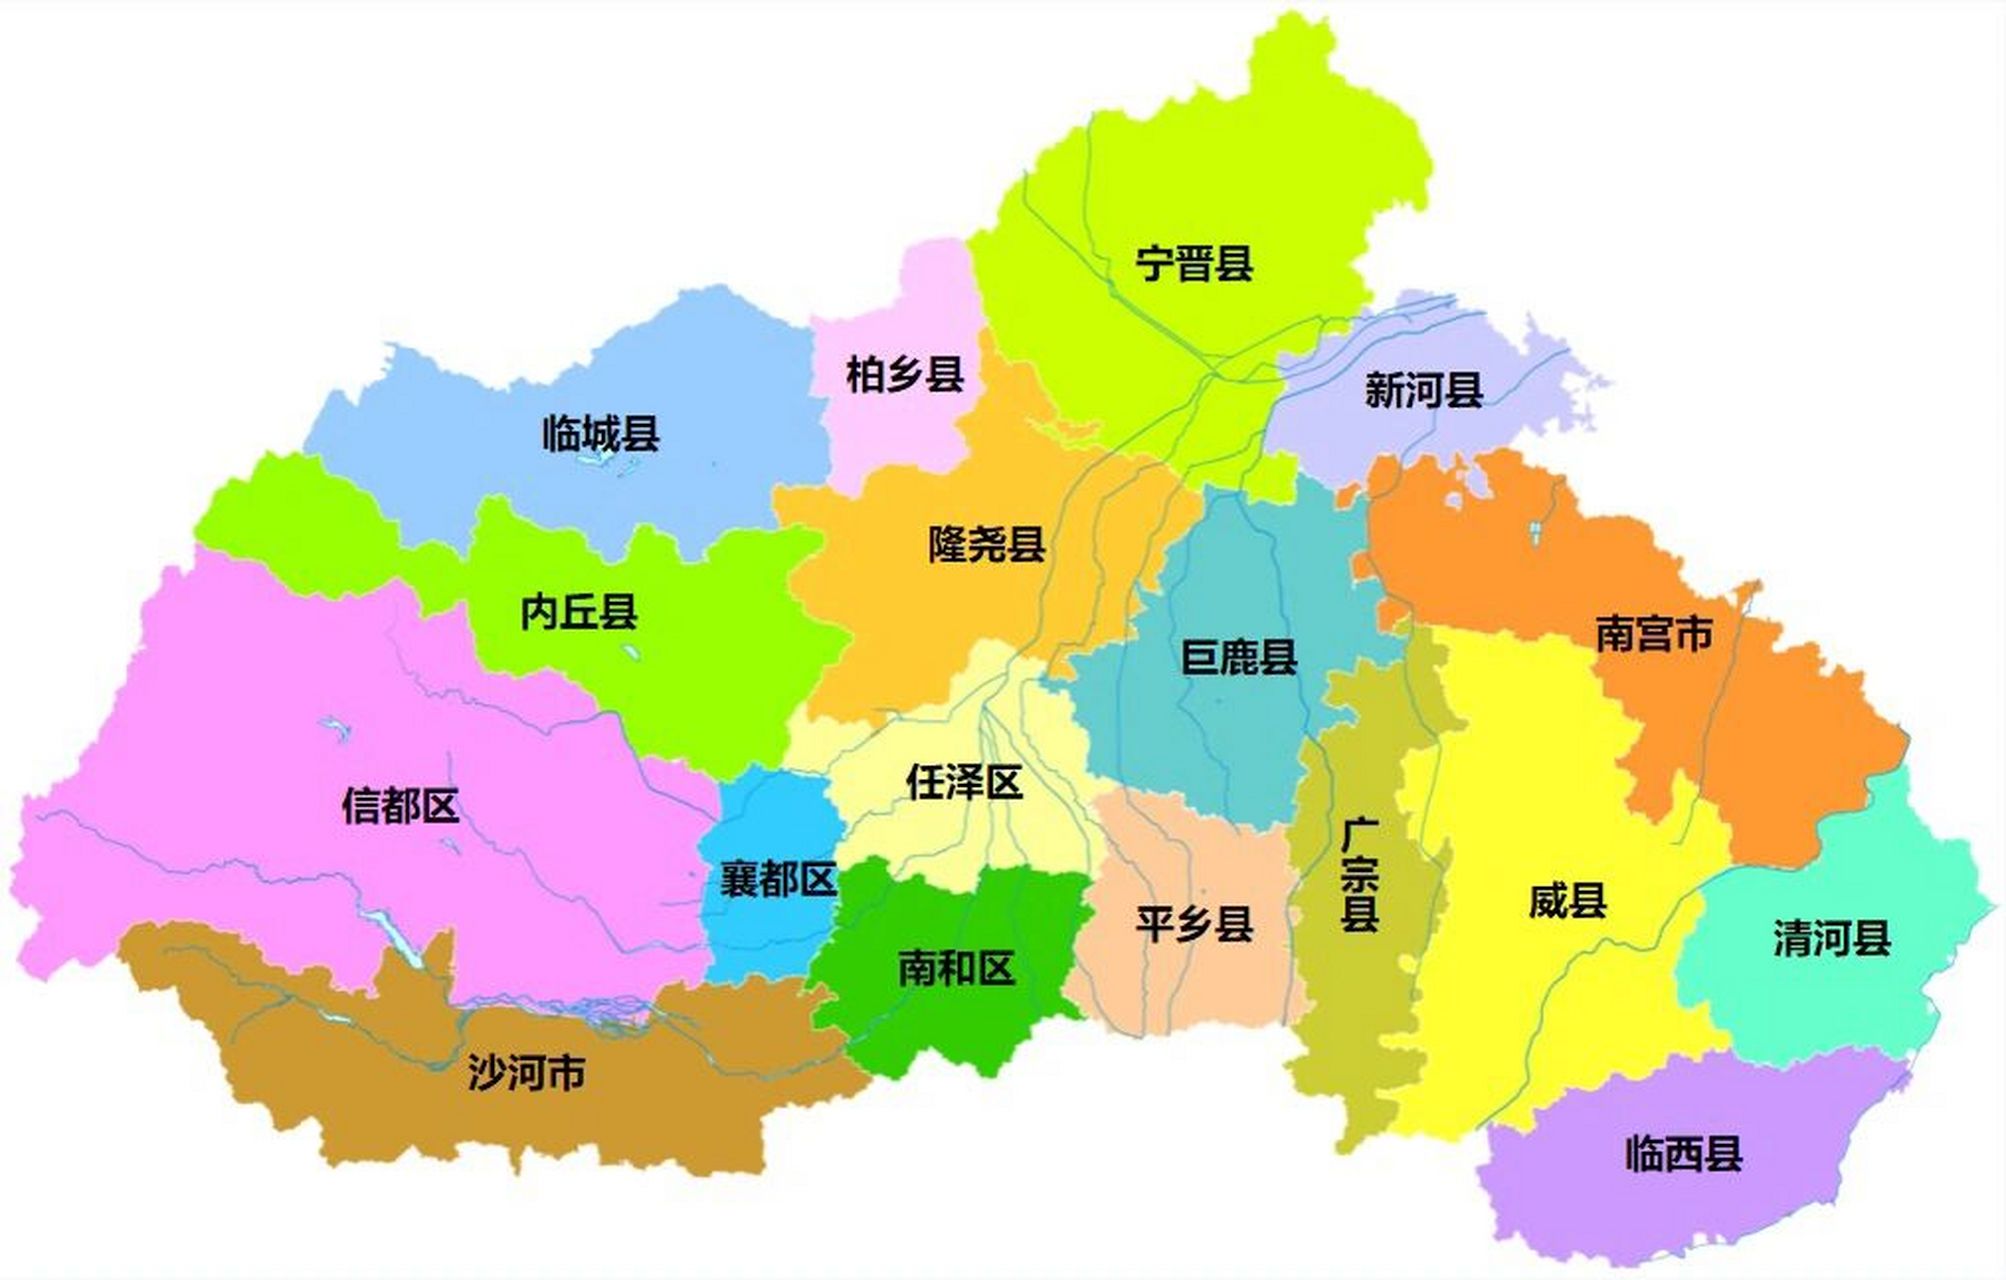 邢台市区划分地图图片